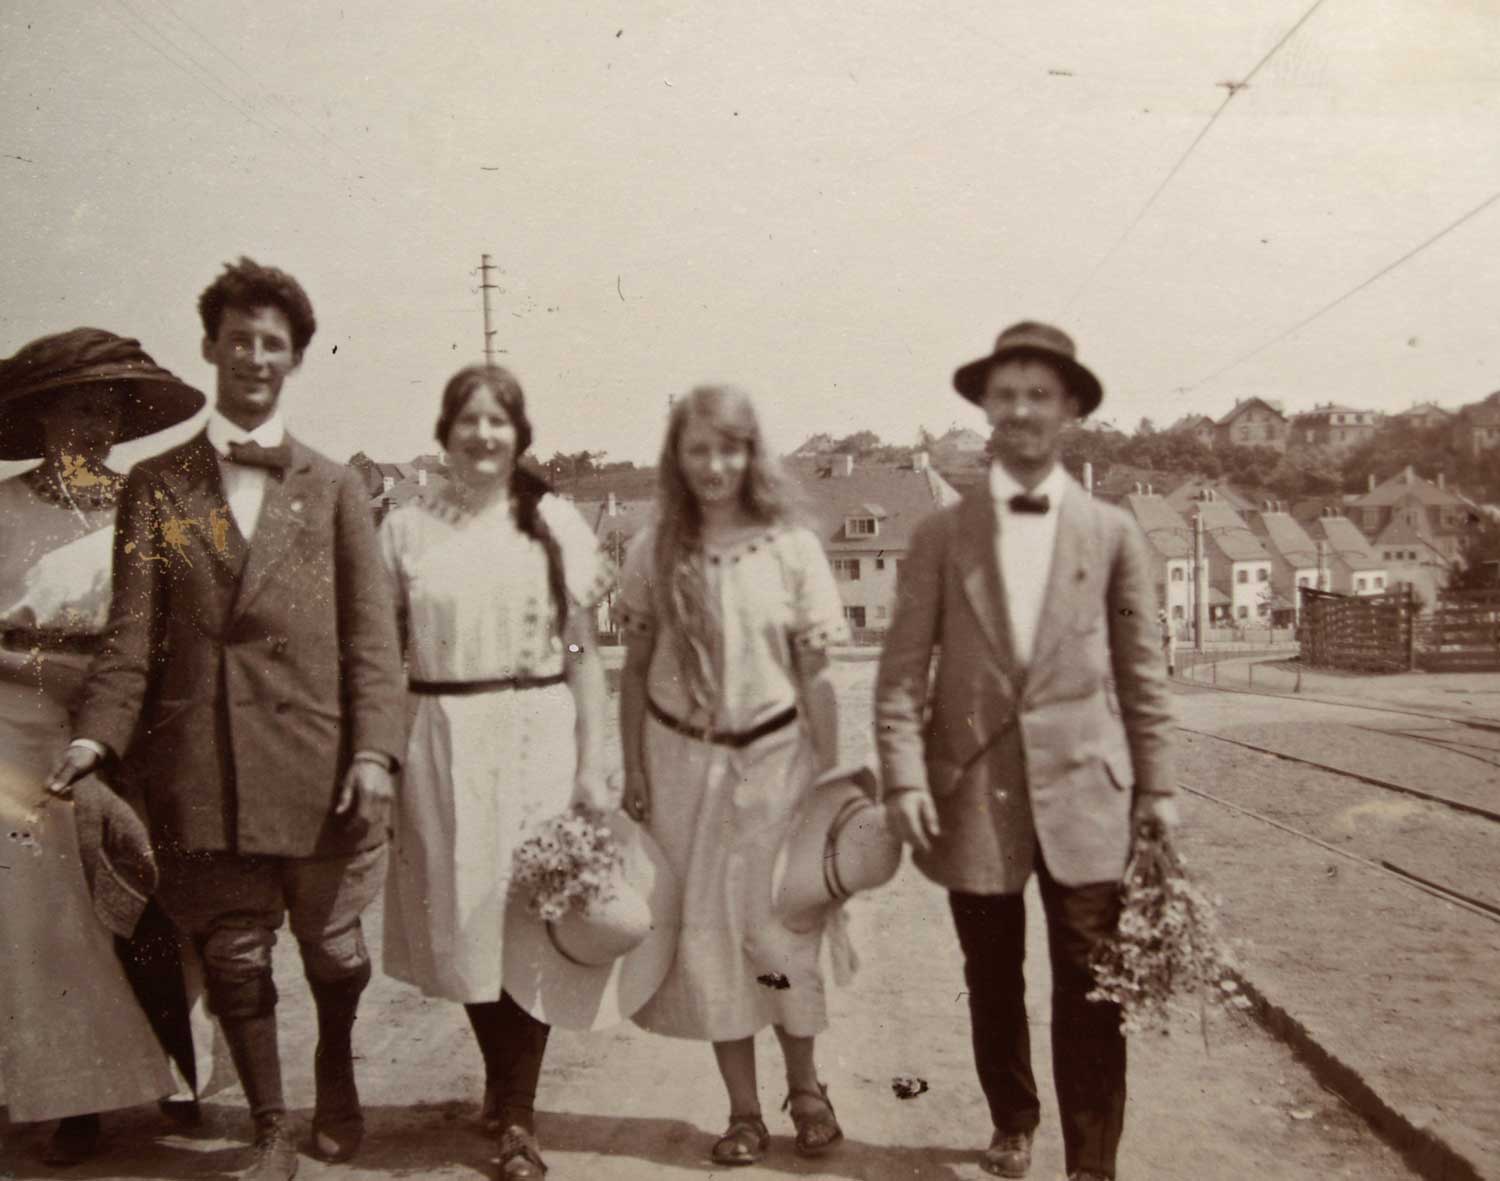 Foto, schwarz-weiß, außen: Fünf Personen in Sommerkleidung